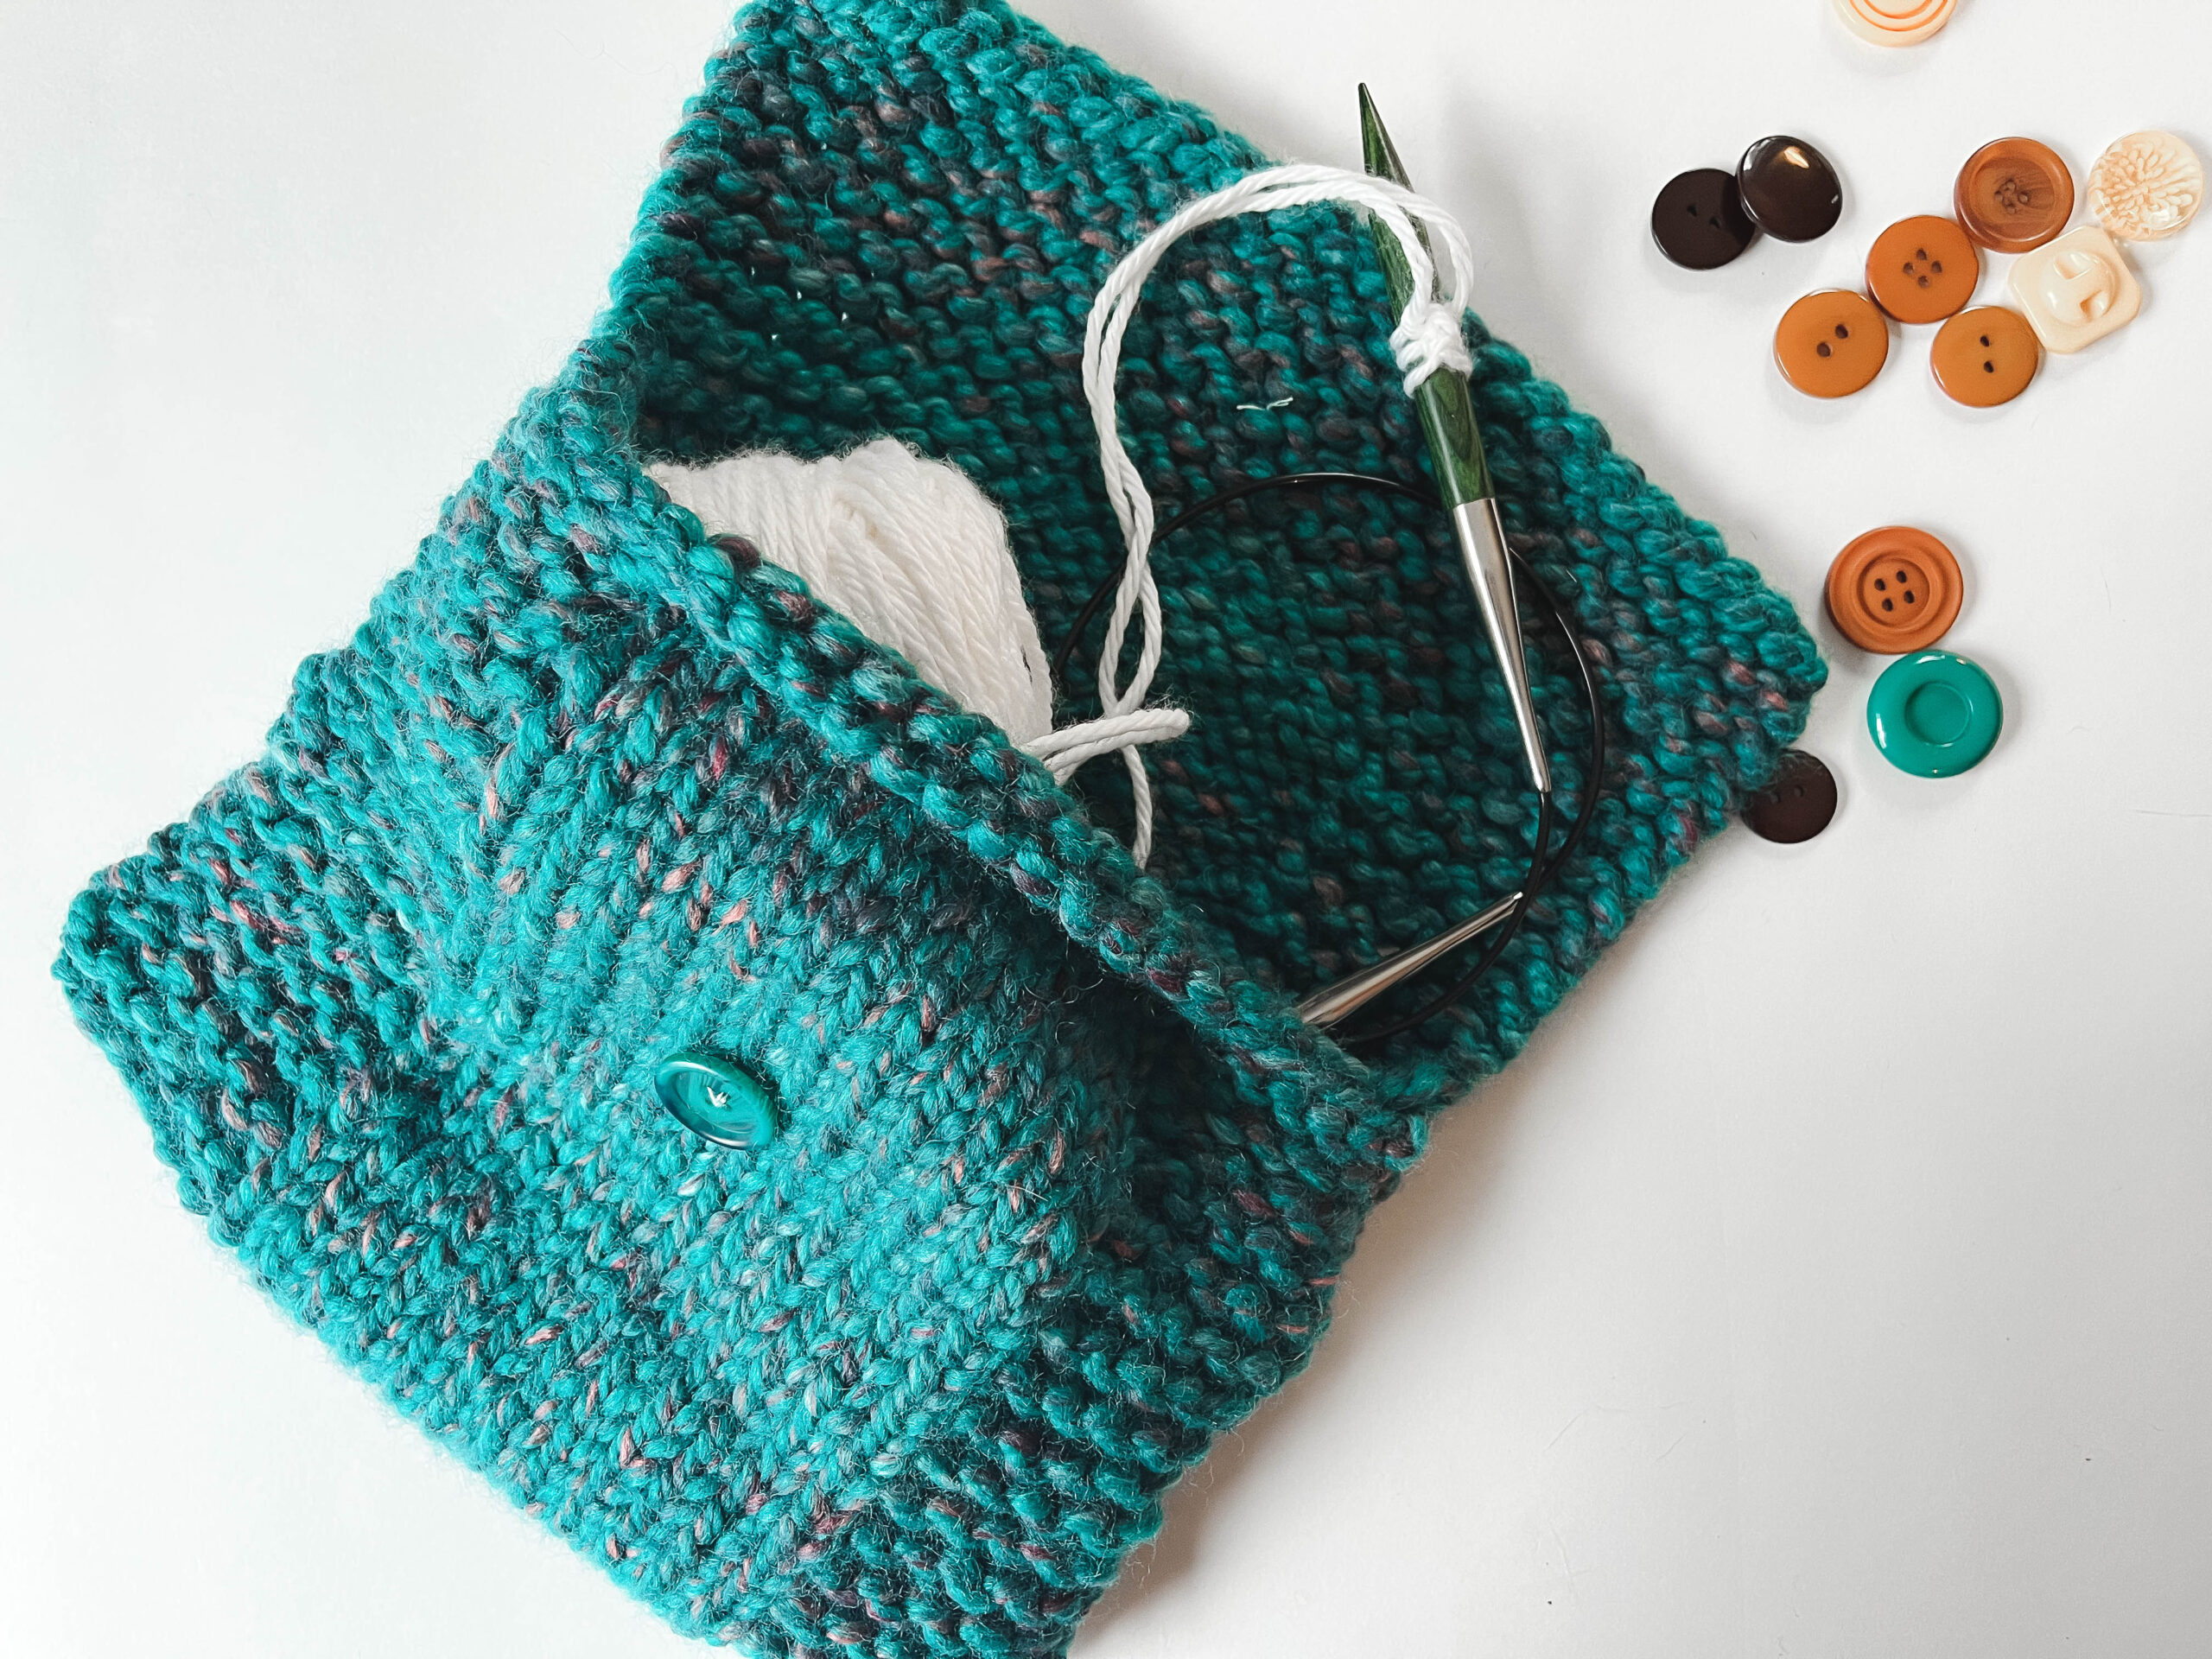 Knitting Bag Patterns: 9 Free Knitting Patterns You Have to Knit |  Interweave